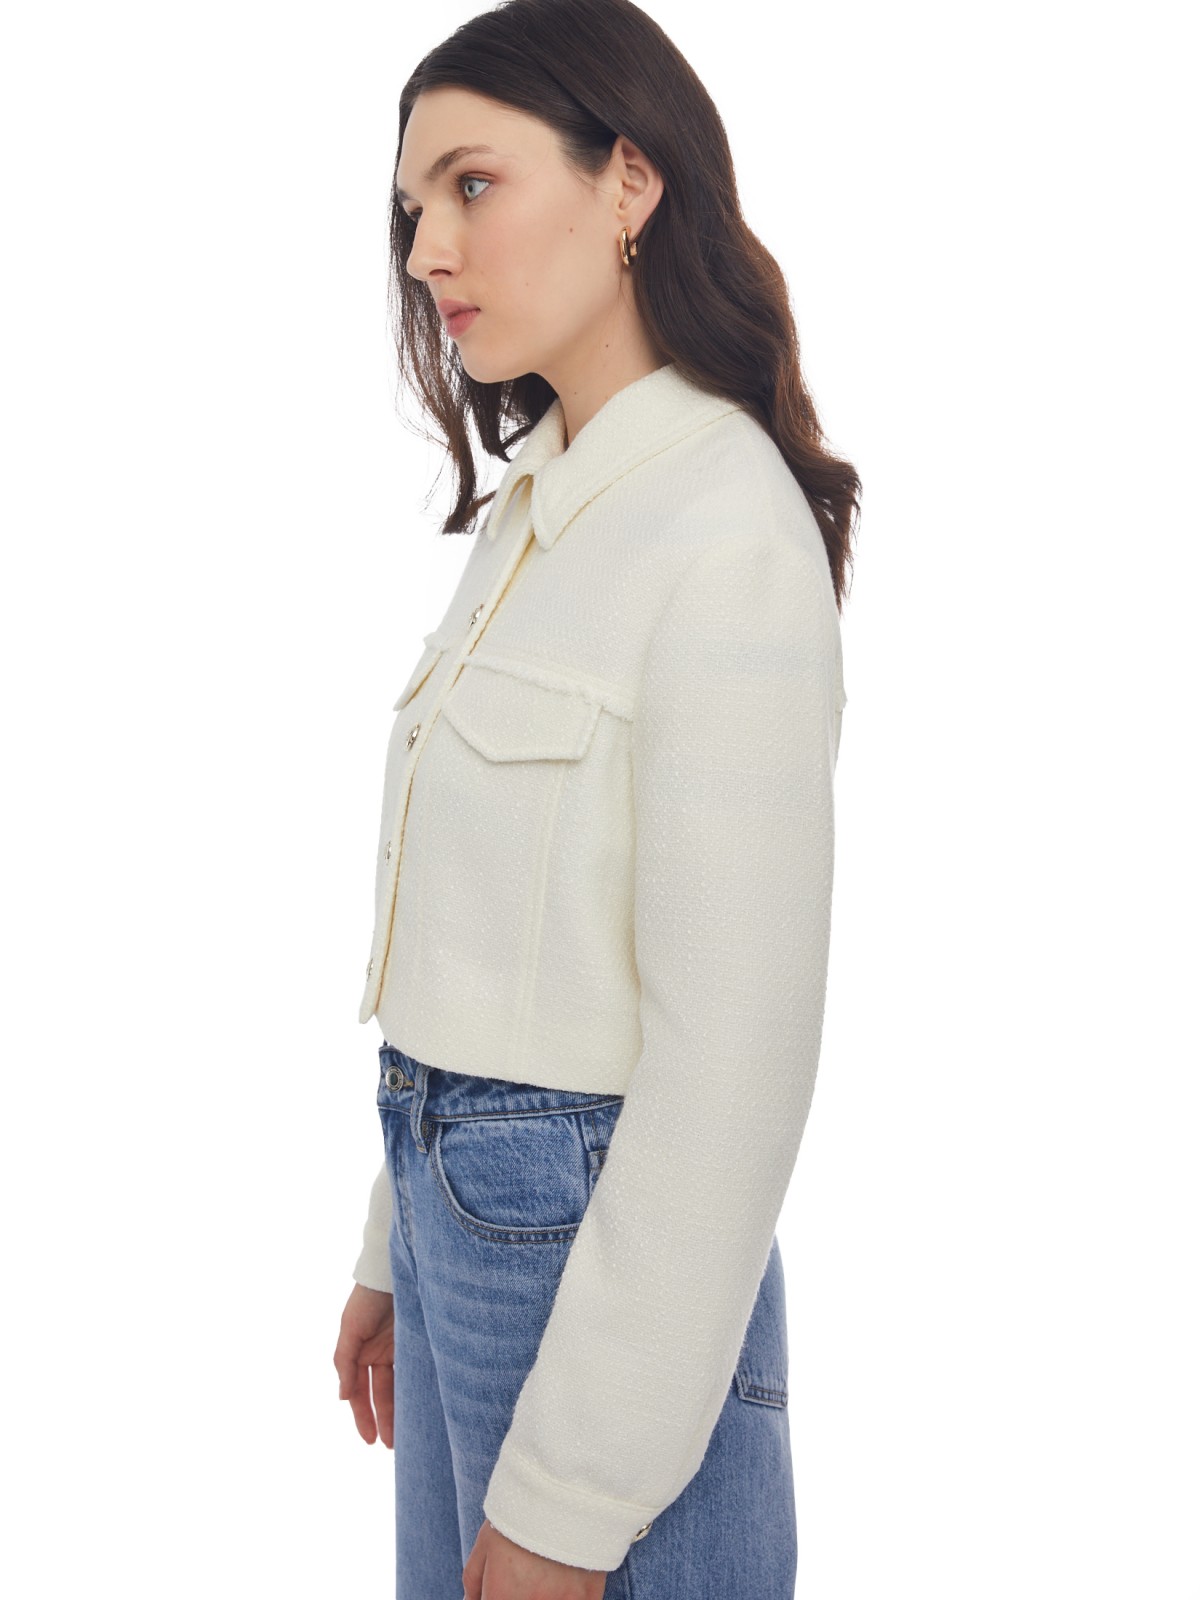 Укороченная куртка-жакет из жаккардовой ткани zolla 024135470061, цвет молоко, размер XL - фото 4